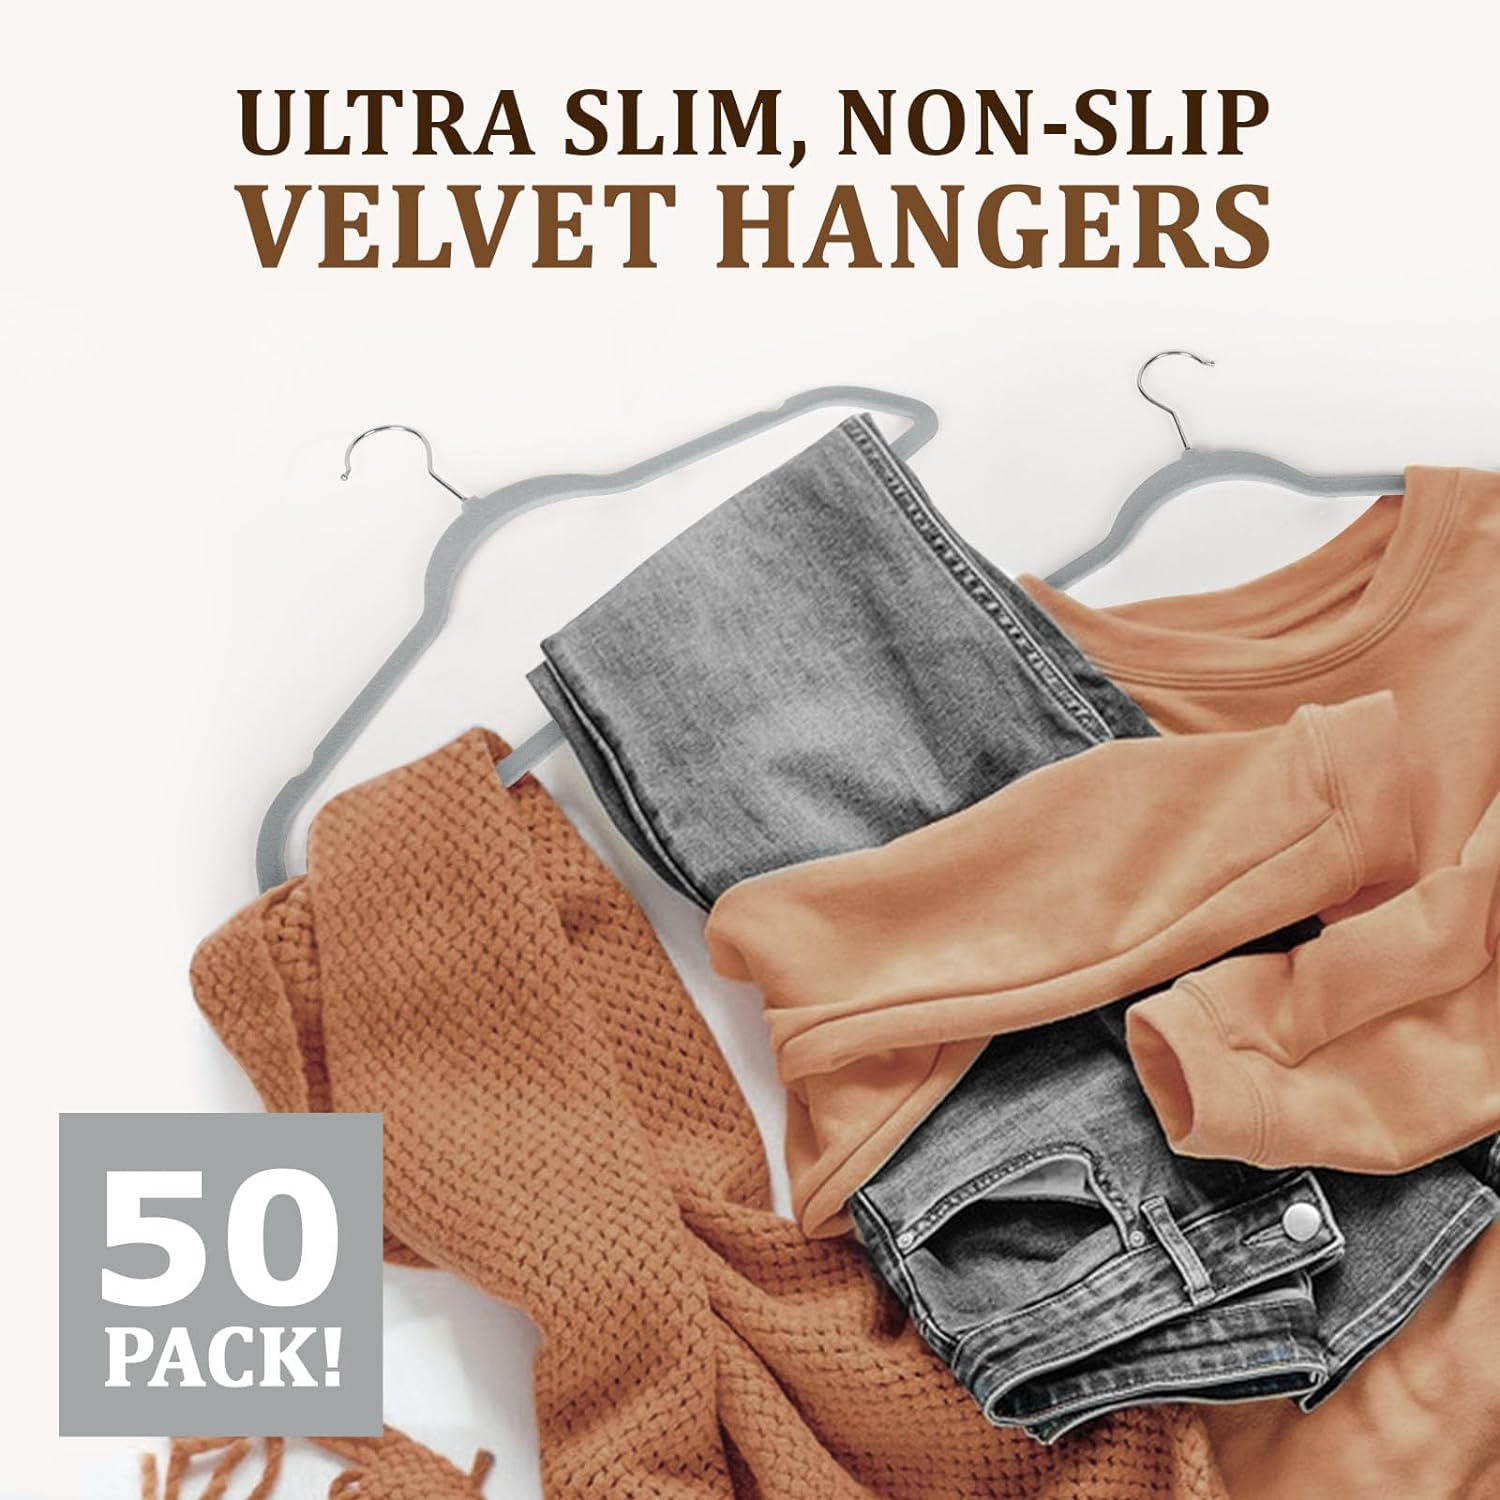 Flysums Premium Velvet Hangers 50 Pack, Heavy Duty Study Gray